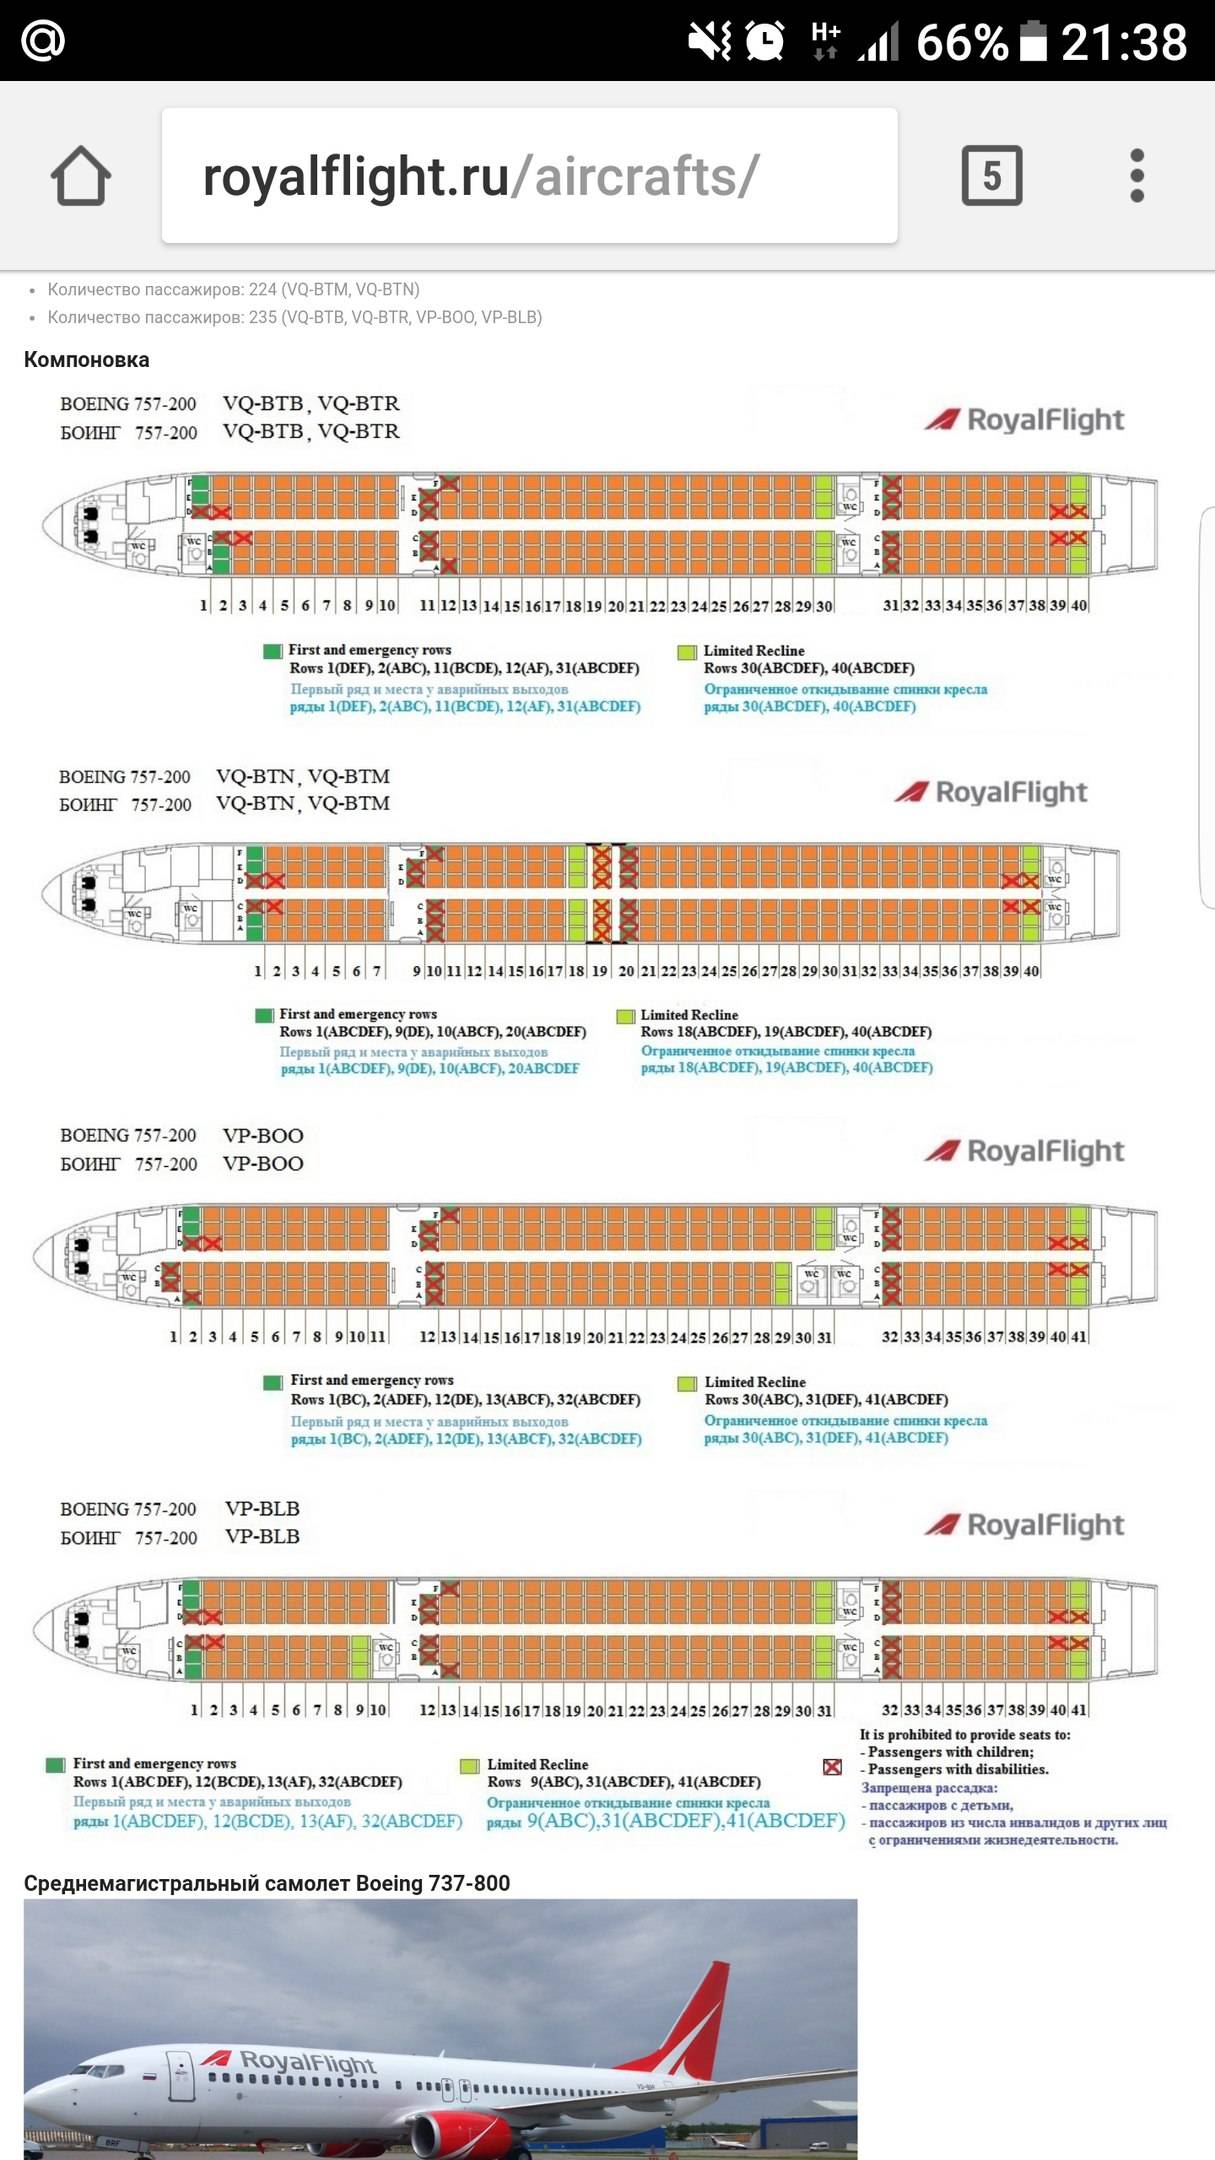 Боинг 757-200: характеристики самолета и советы по выбору мест